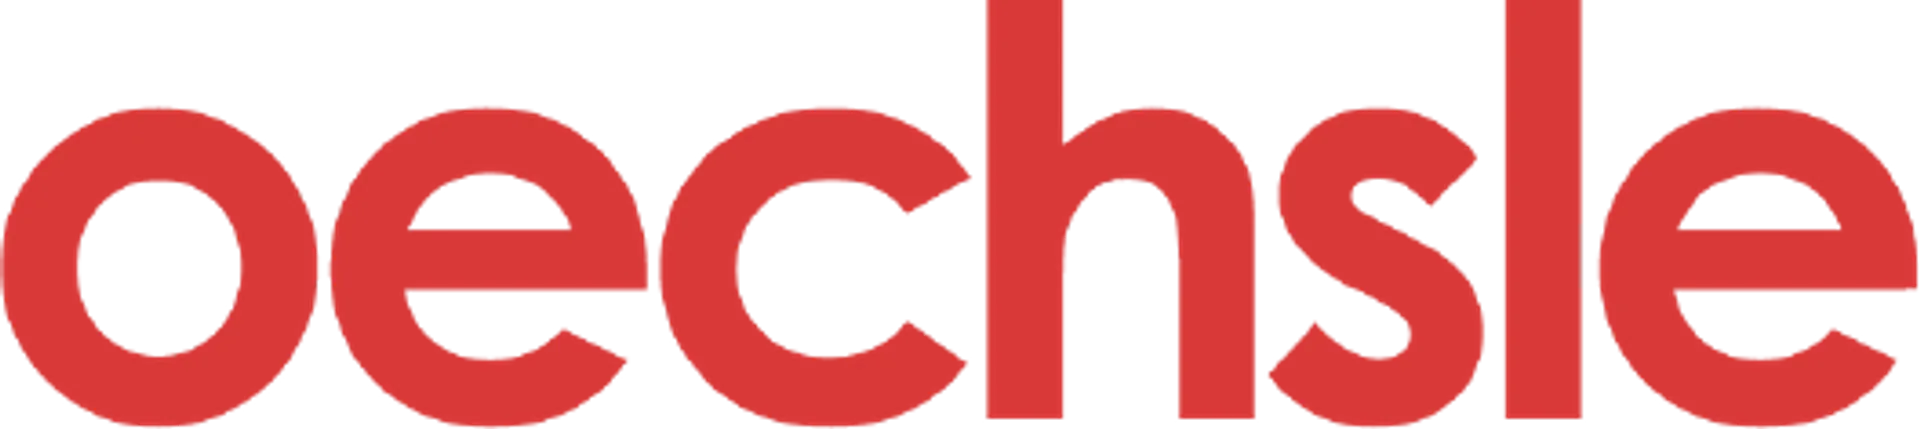 OECHSLE logo de catálogo